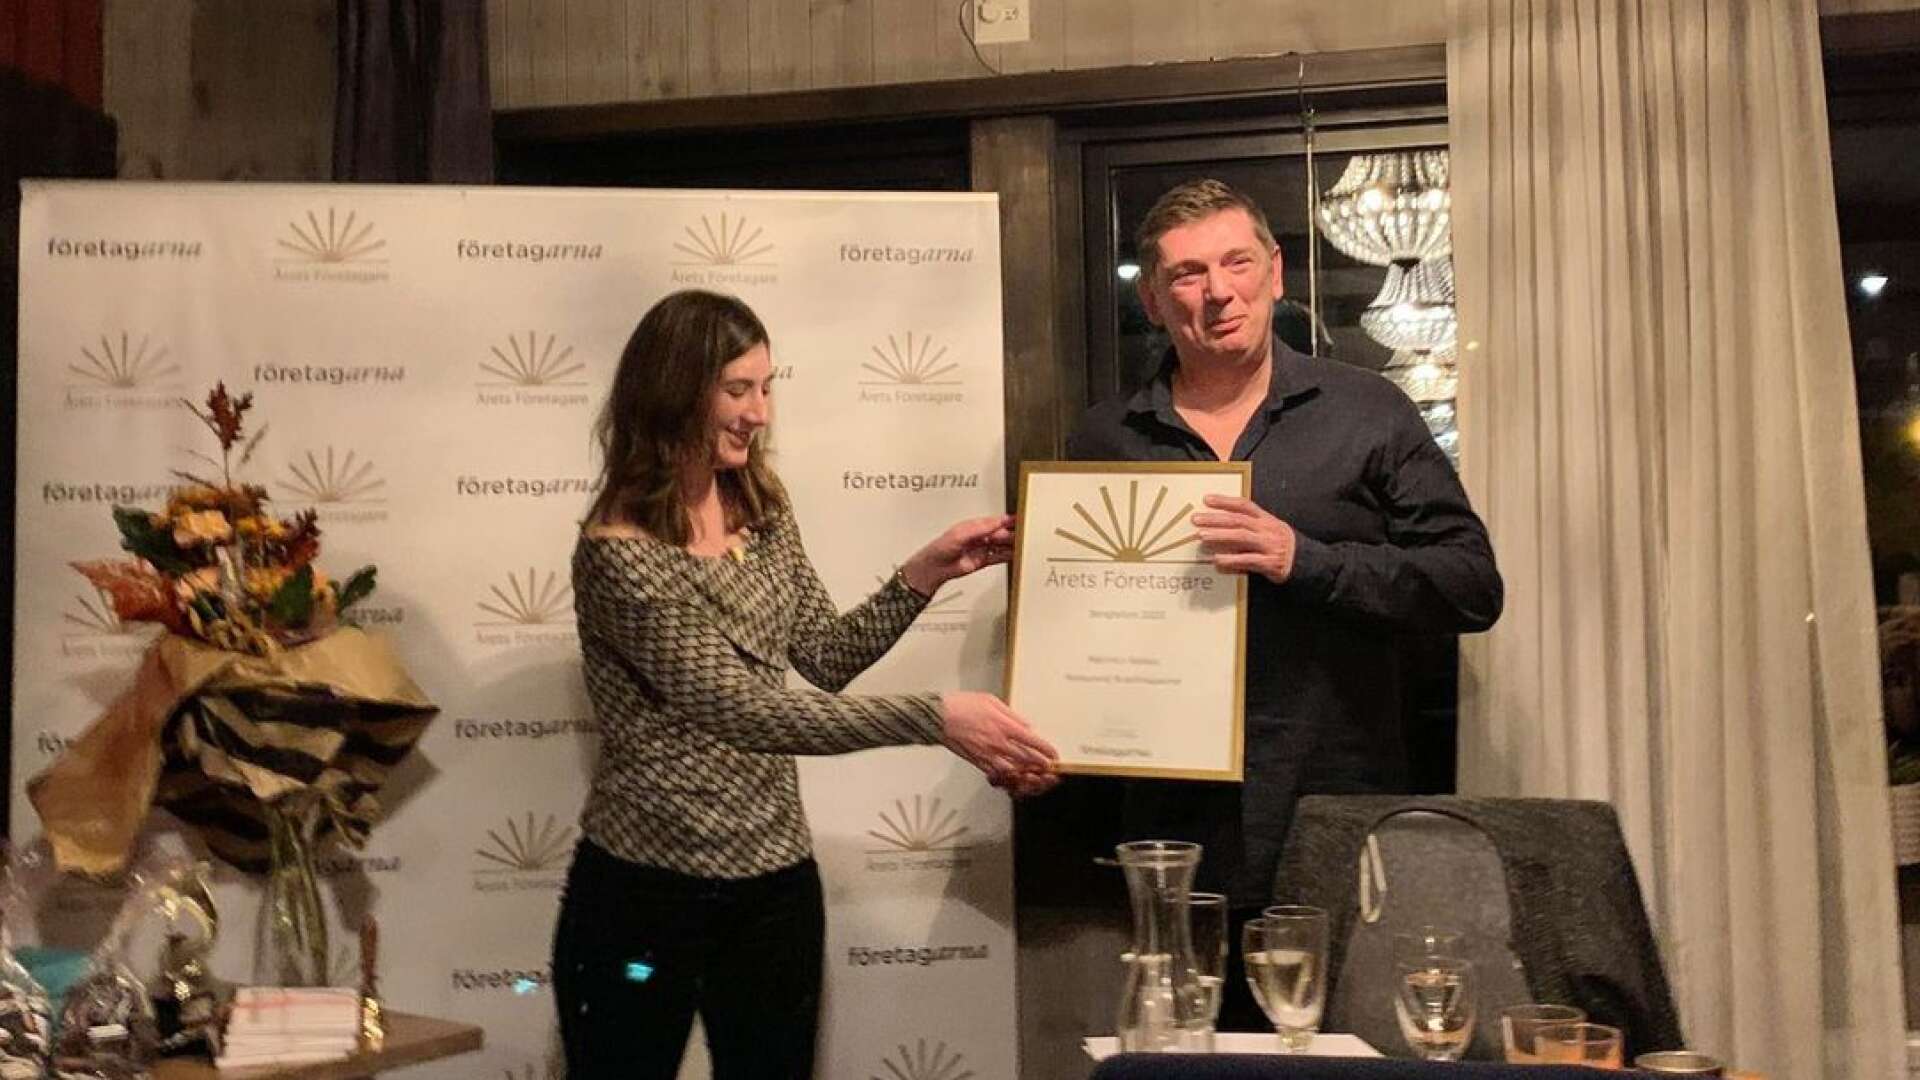 Företagarnas ordförande Stephanie Brodeur Flink läste motiveringen och delade ut diplom och blommor till Marinko Aleksic som under åtskilliga år drivit och utvecklat restaurangverksamheten i Bengtsfors.